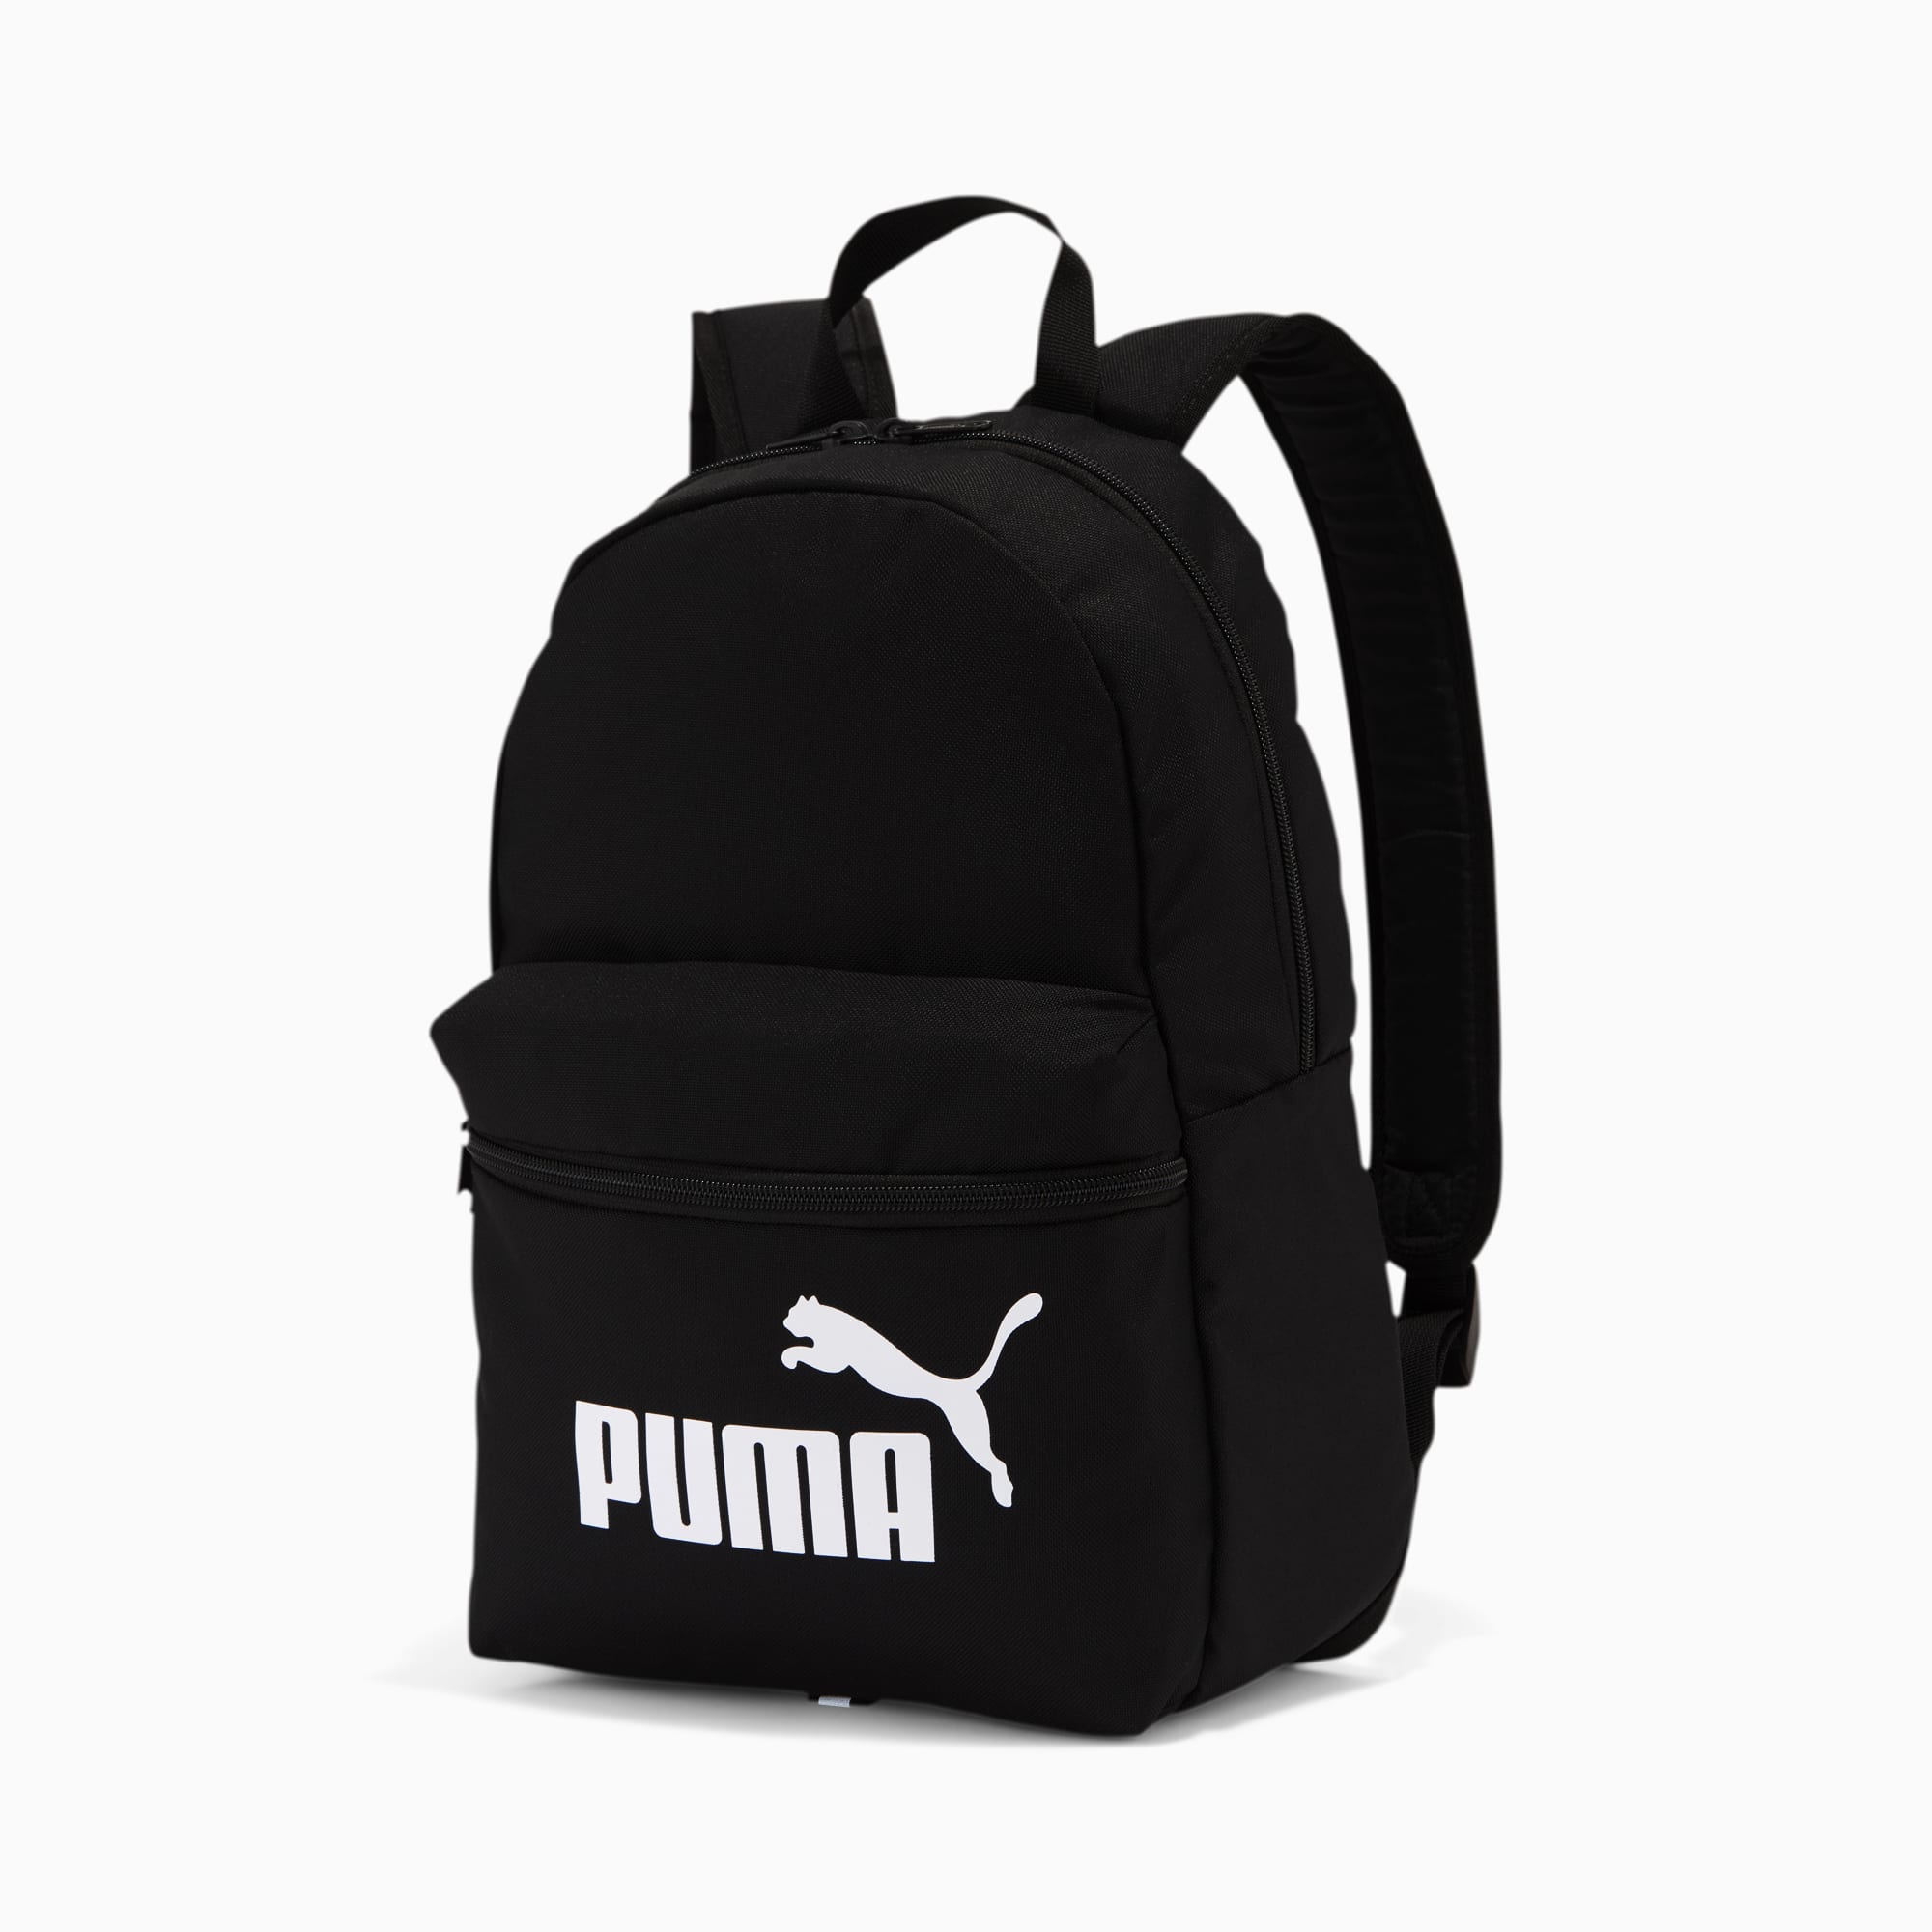 puma black and white backpack